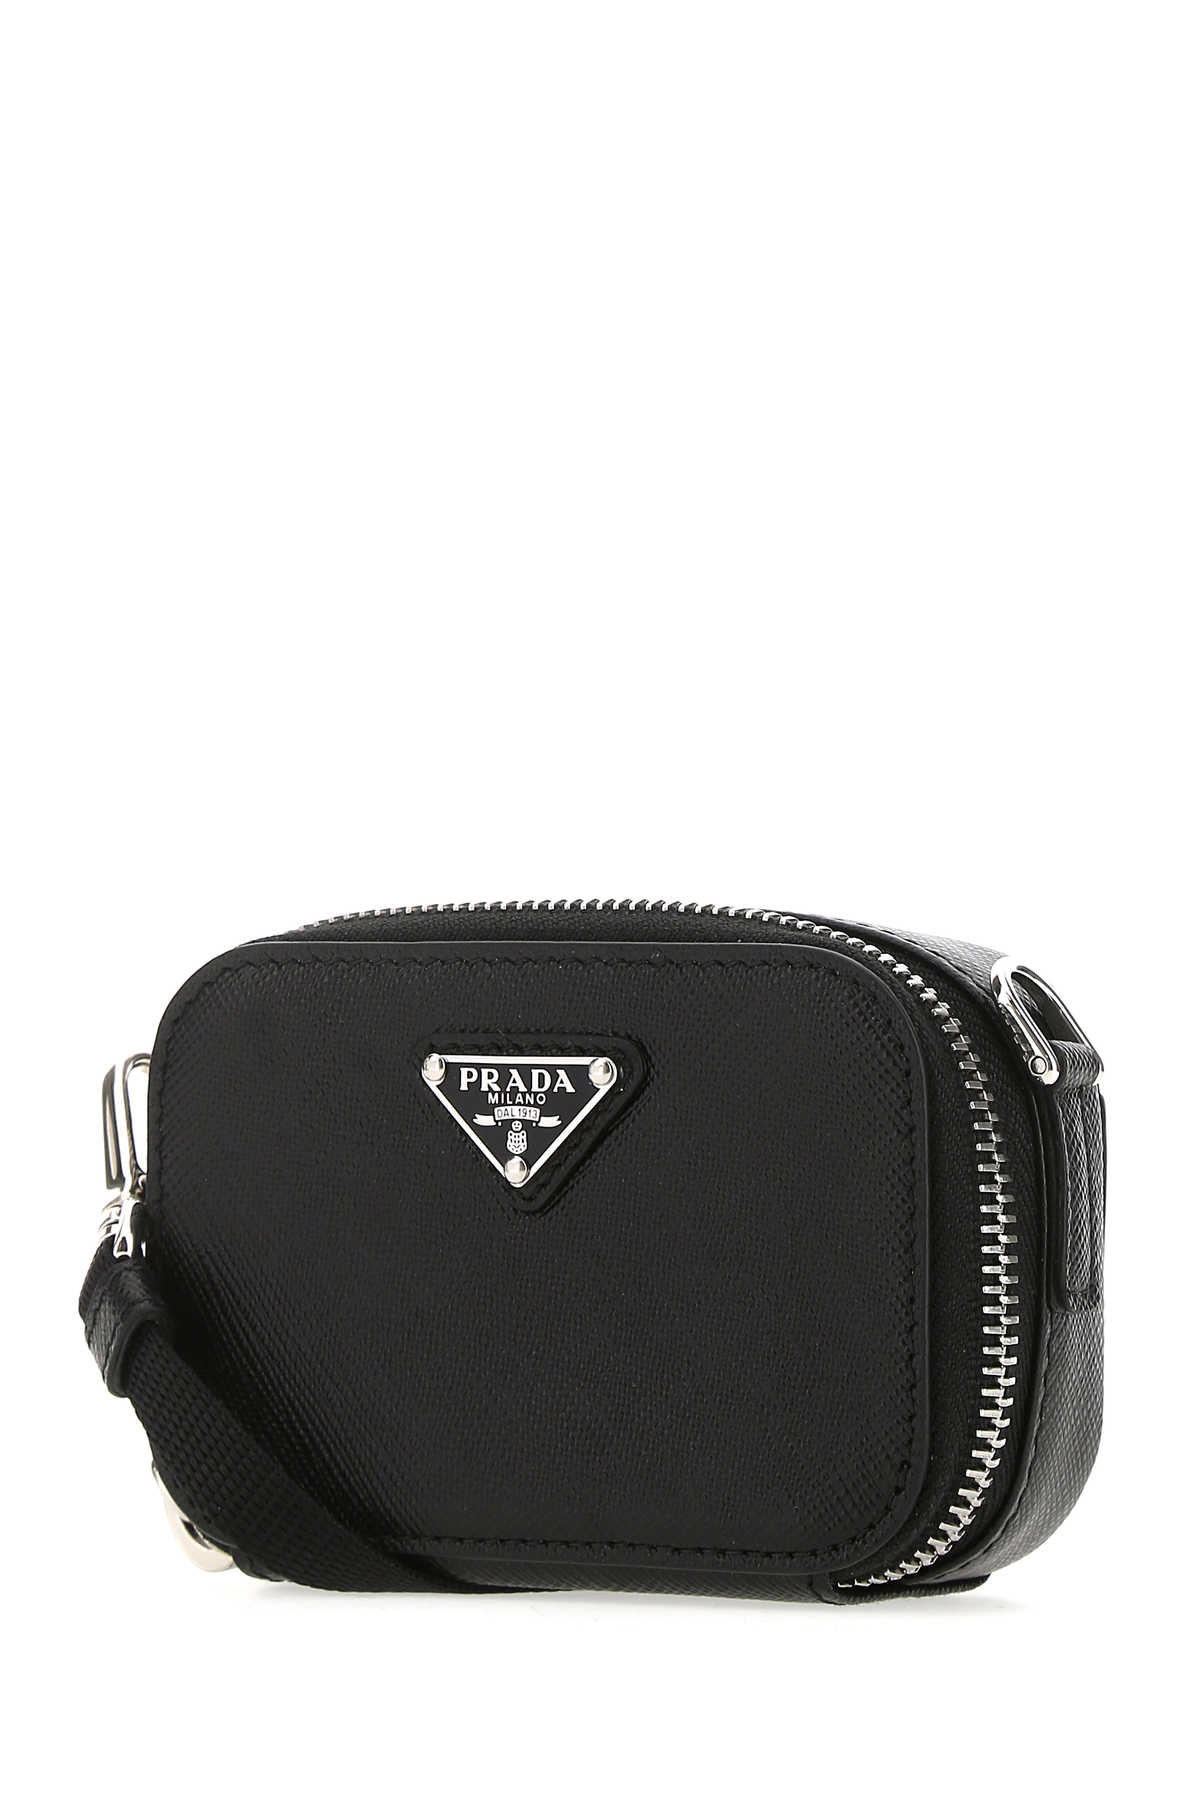 Shop Prada Black Leather Crossbody Bag In F0002